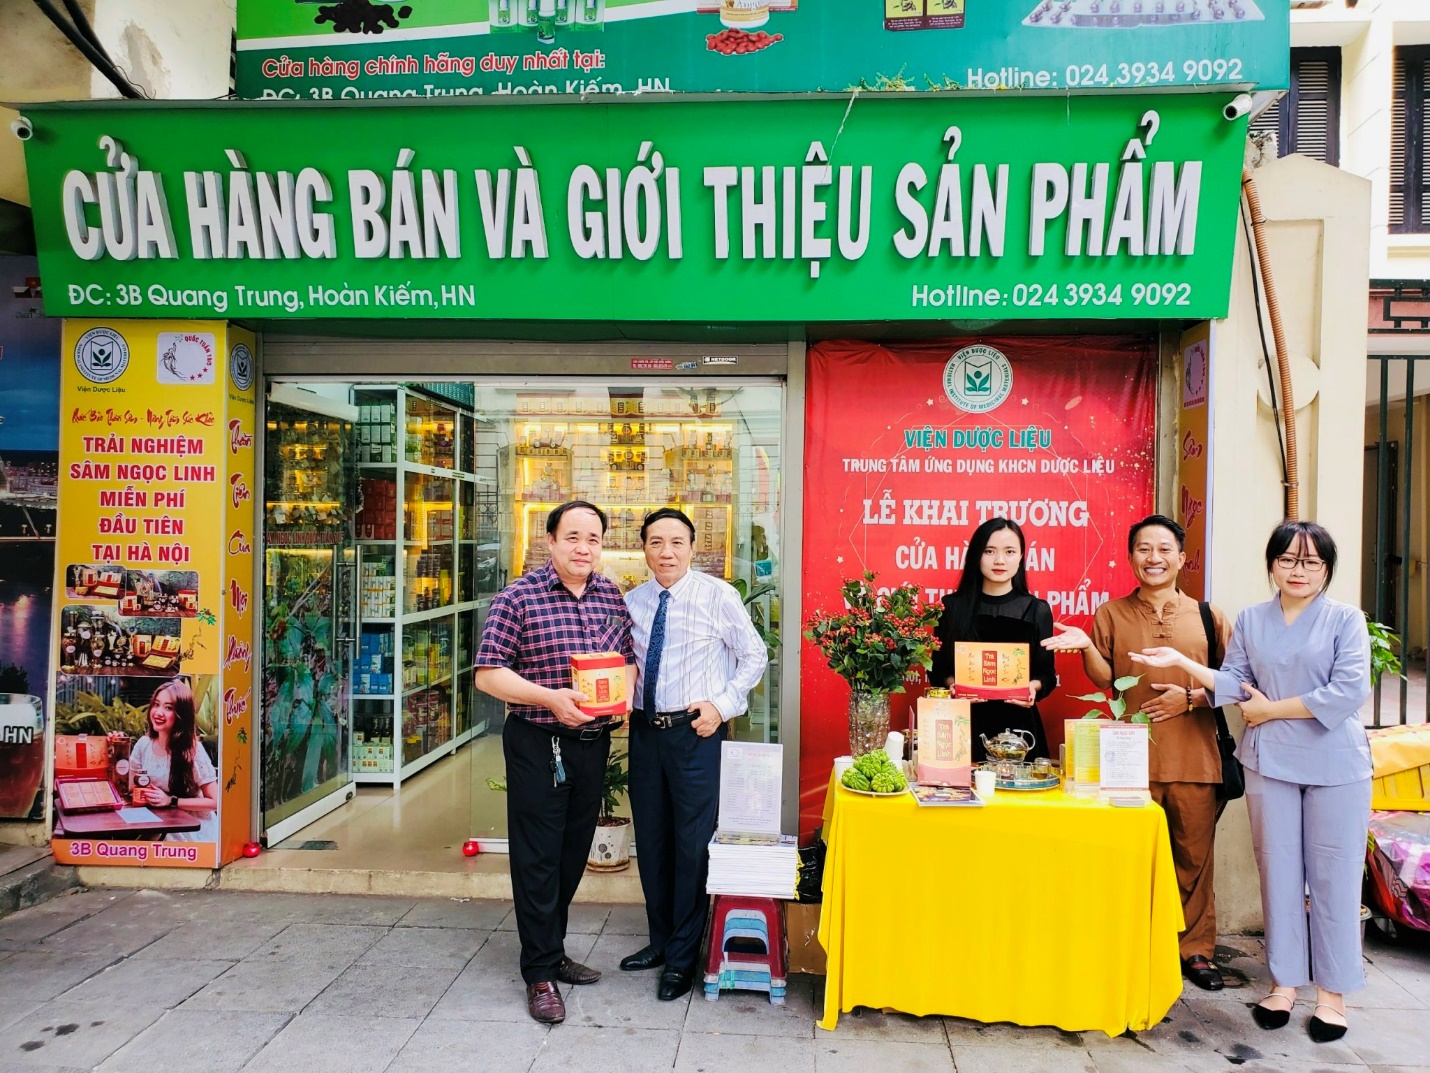 Công ty TNHH Sâm Quốc Tuấn 1905 kết hợp với Trung tâm ứng dụng khoa học công nghệ dược liệu khai trương cửa hàng bán và giới thiệu sản phẩm sâm Ngọc Linh.